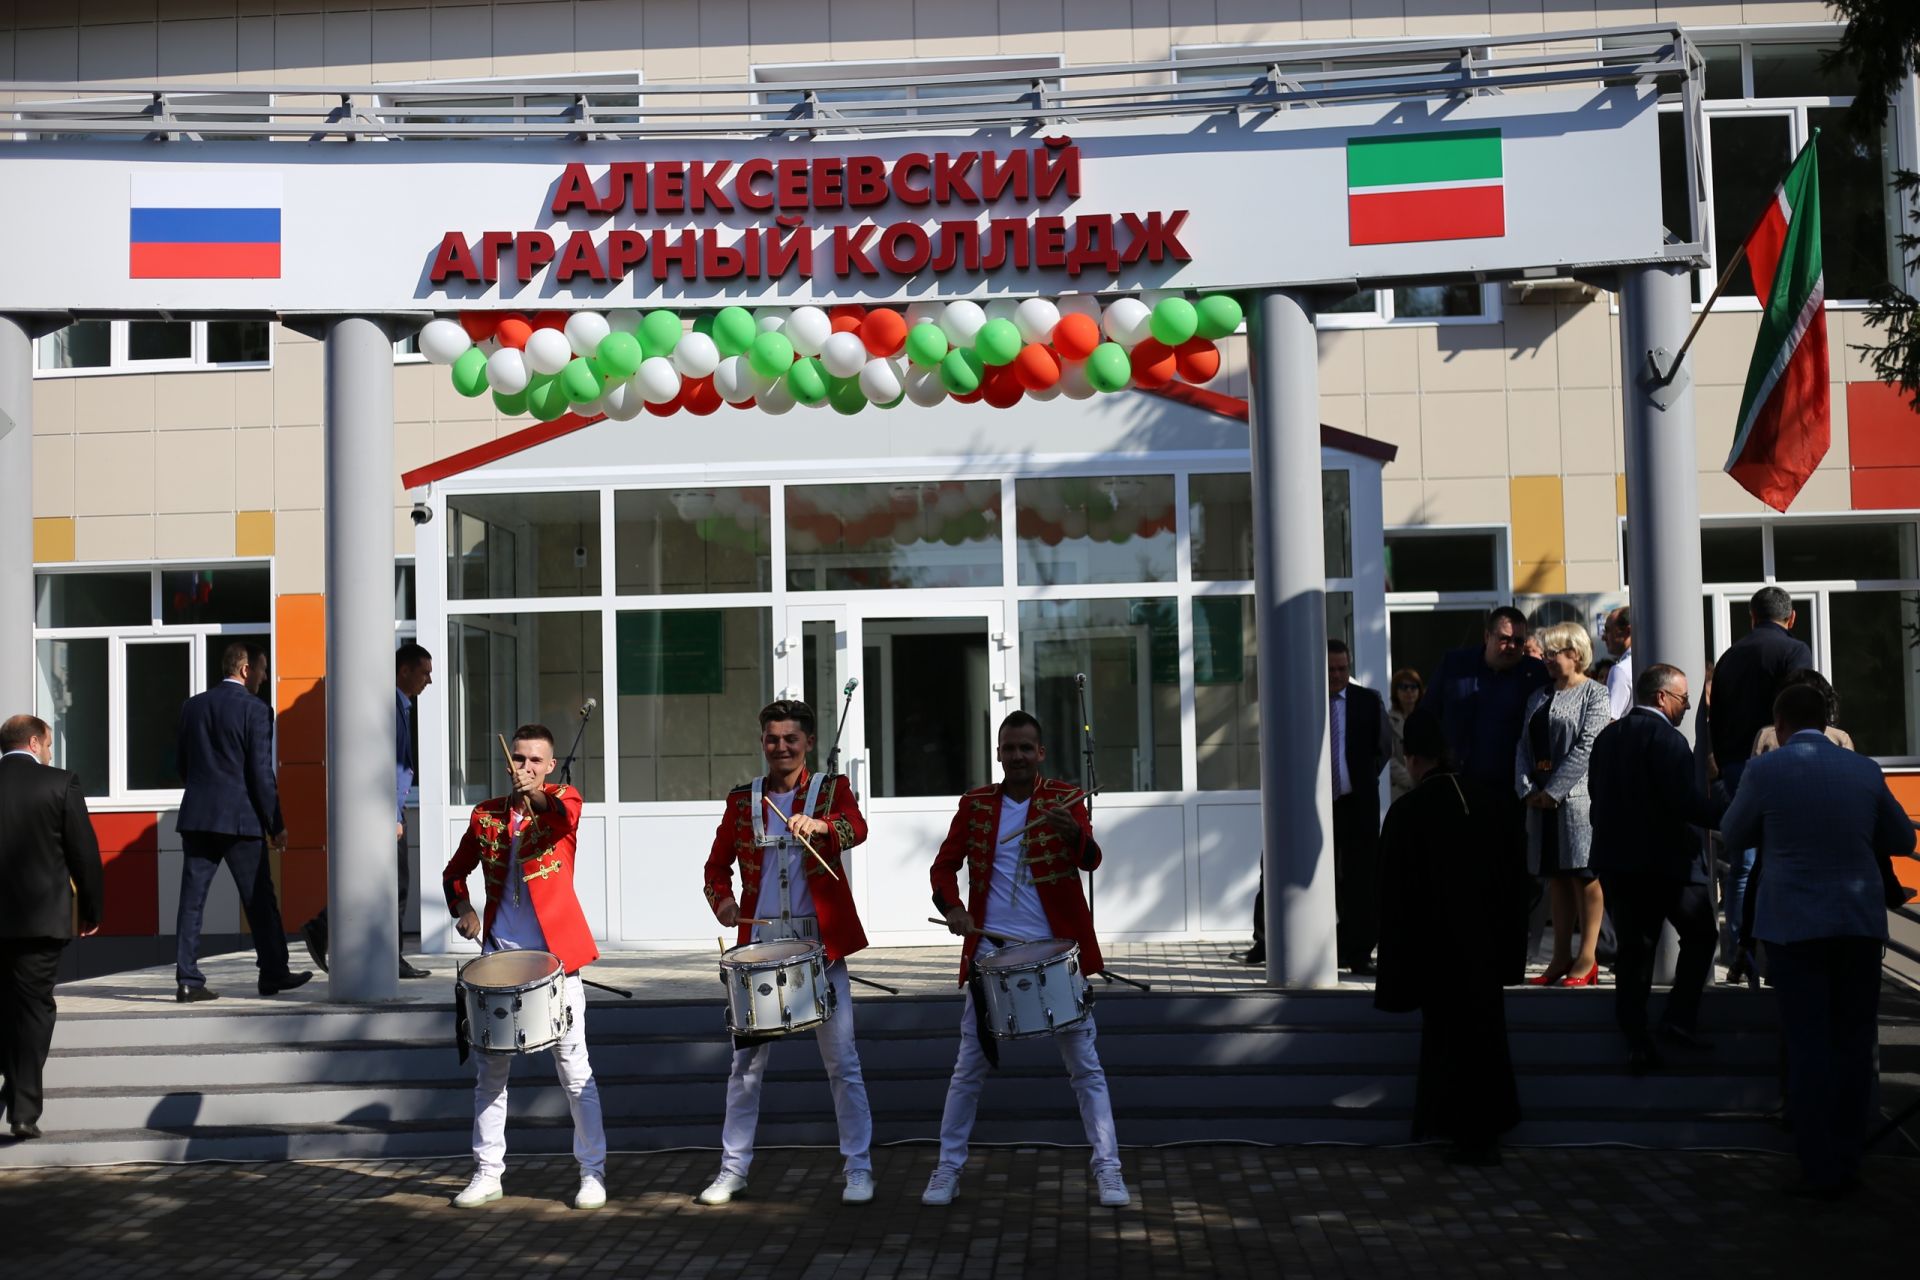 Фоторепортаж: Алексеевский аграрный колледж распахнул свои двери для студентов после капитального ремонта